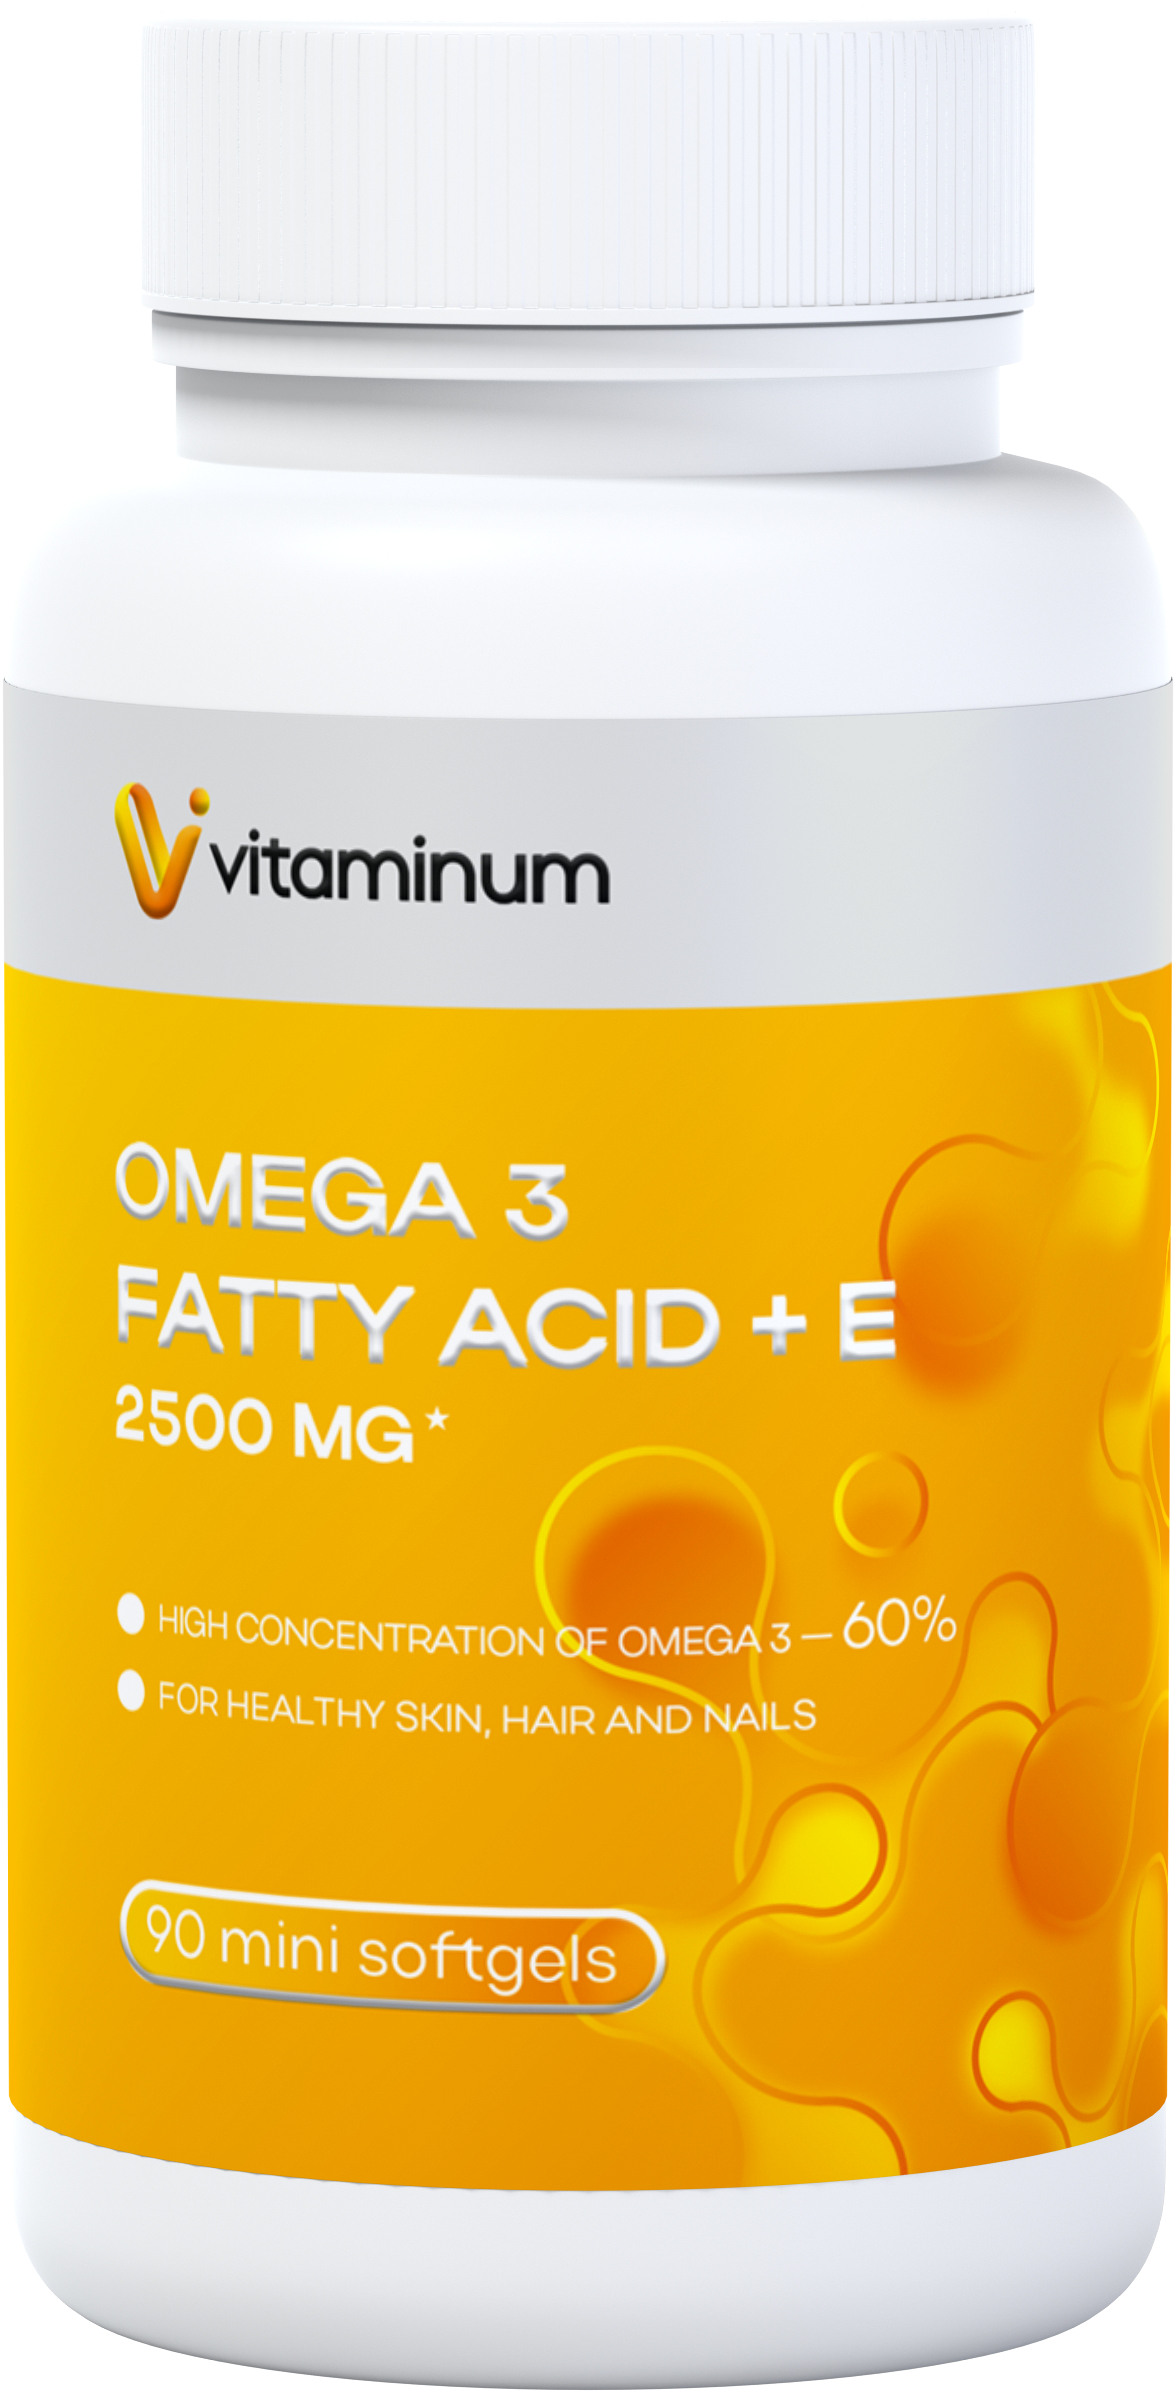  Vitaminum ОМЕГА 3 60% + витамин Е (2500 MG*) 90 капсул 700 мг   в Нижневартовске